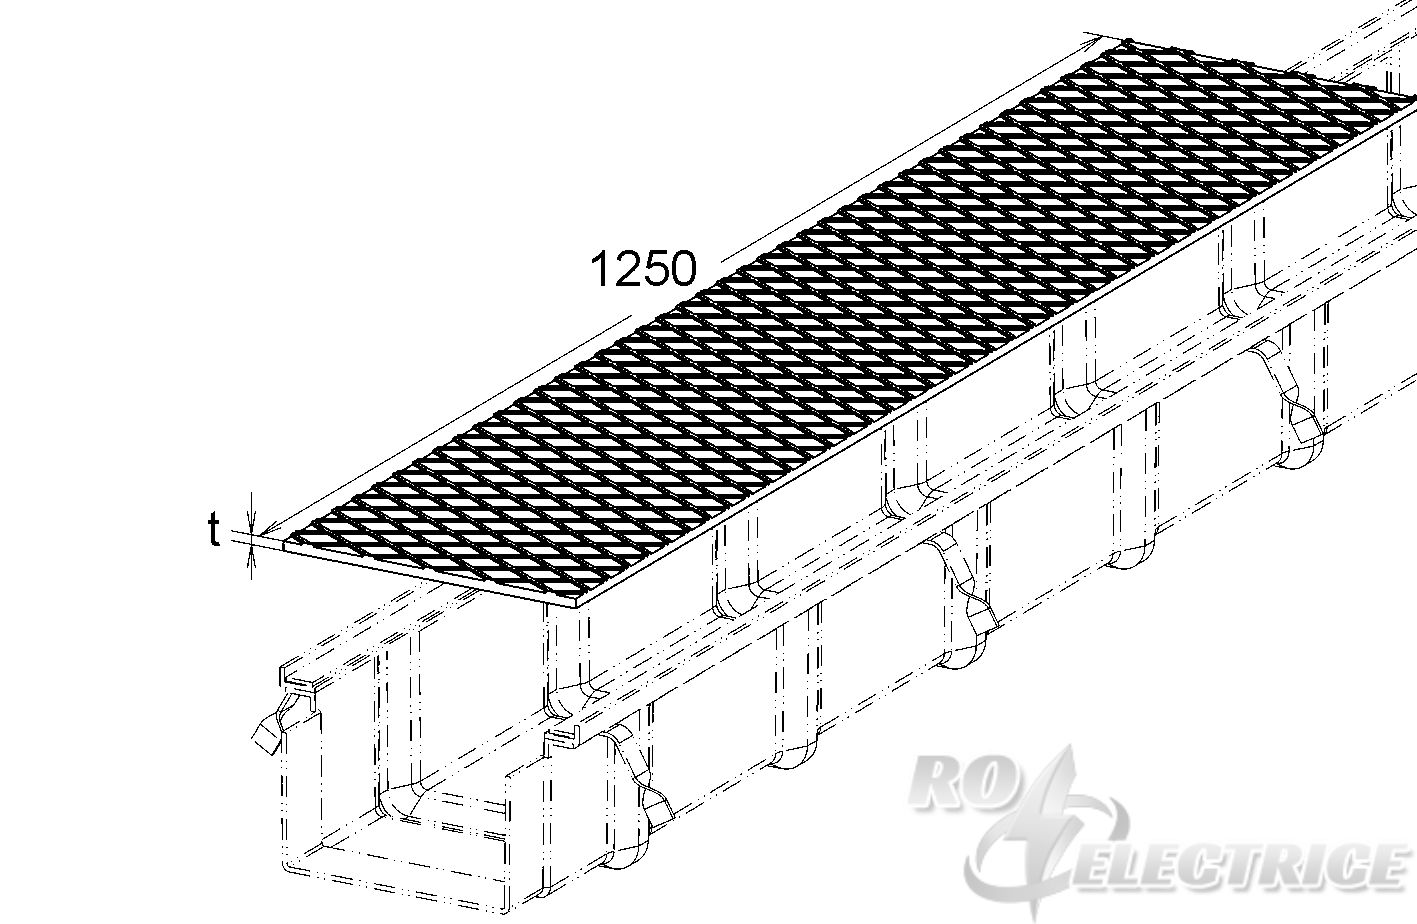 Stahl-Deckel für GFK-Kabelrinne, 250x1250 mm, t=8 mm, Stahl, feuerverzinkt DIN EN ISO 1461